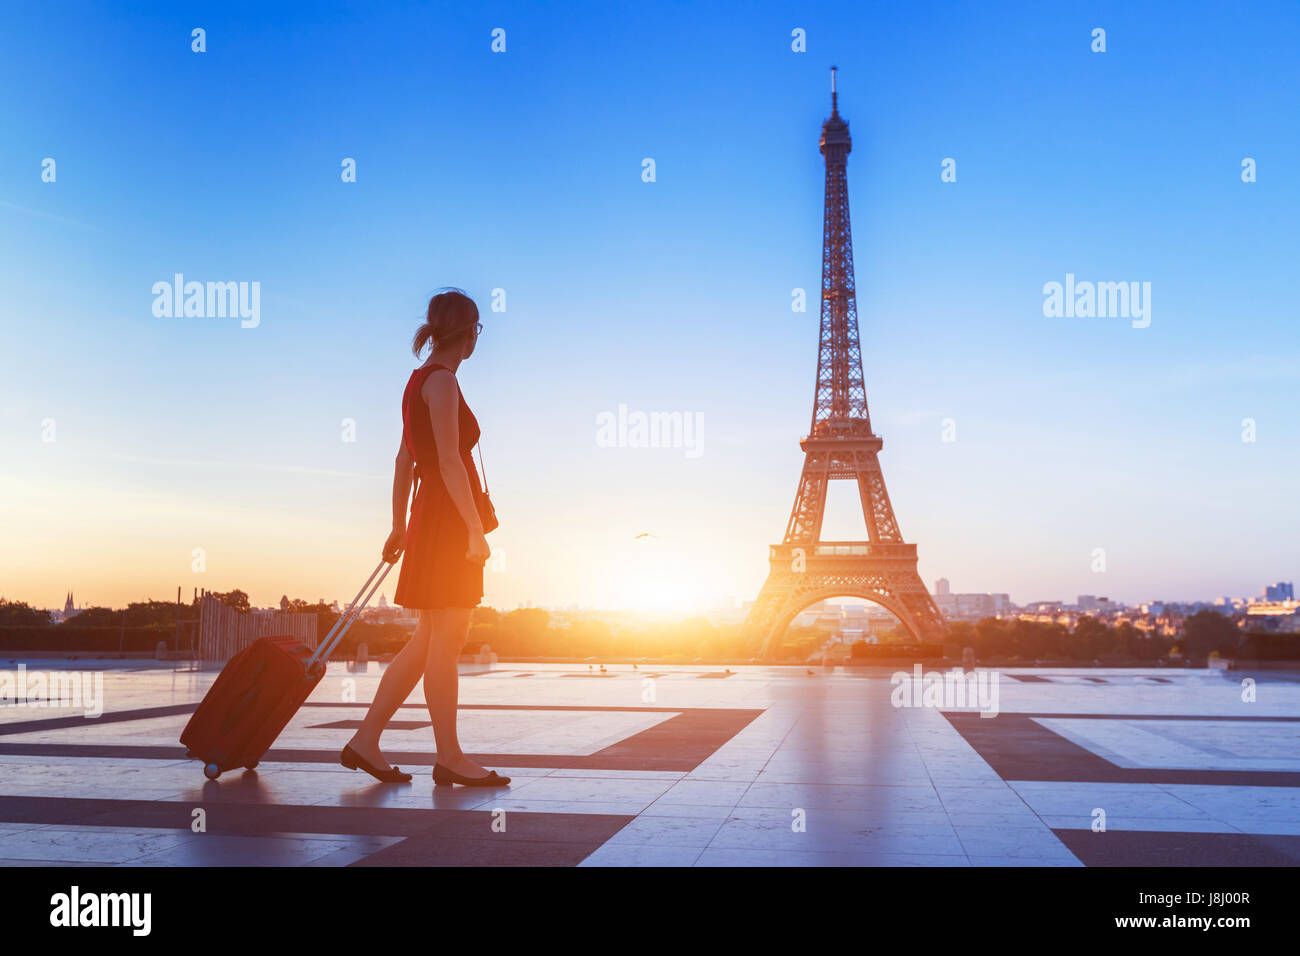 Silhouette d'une touriste marcher avec une valise sur le Trocadéro en face de la Tour Eiffel, Paris, France Banque D'Images